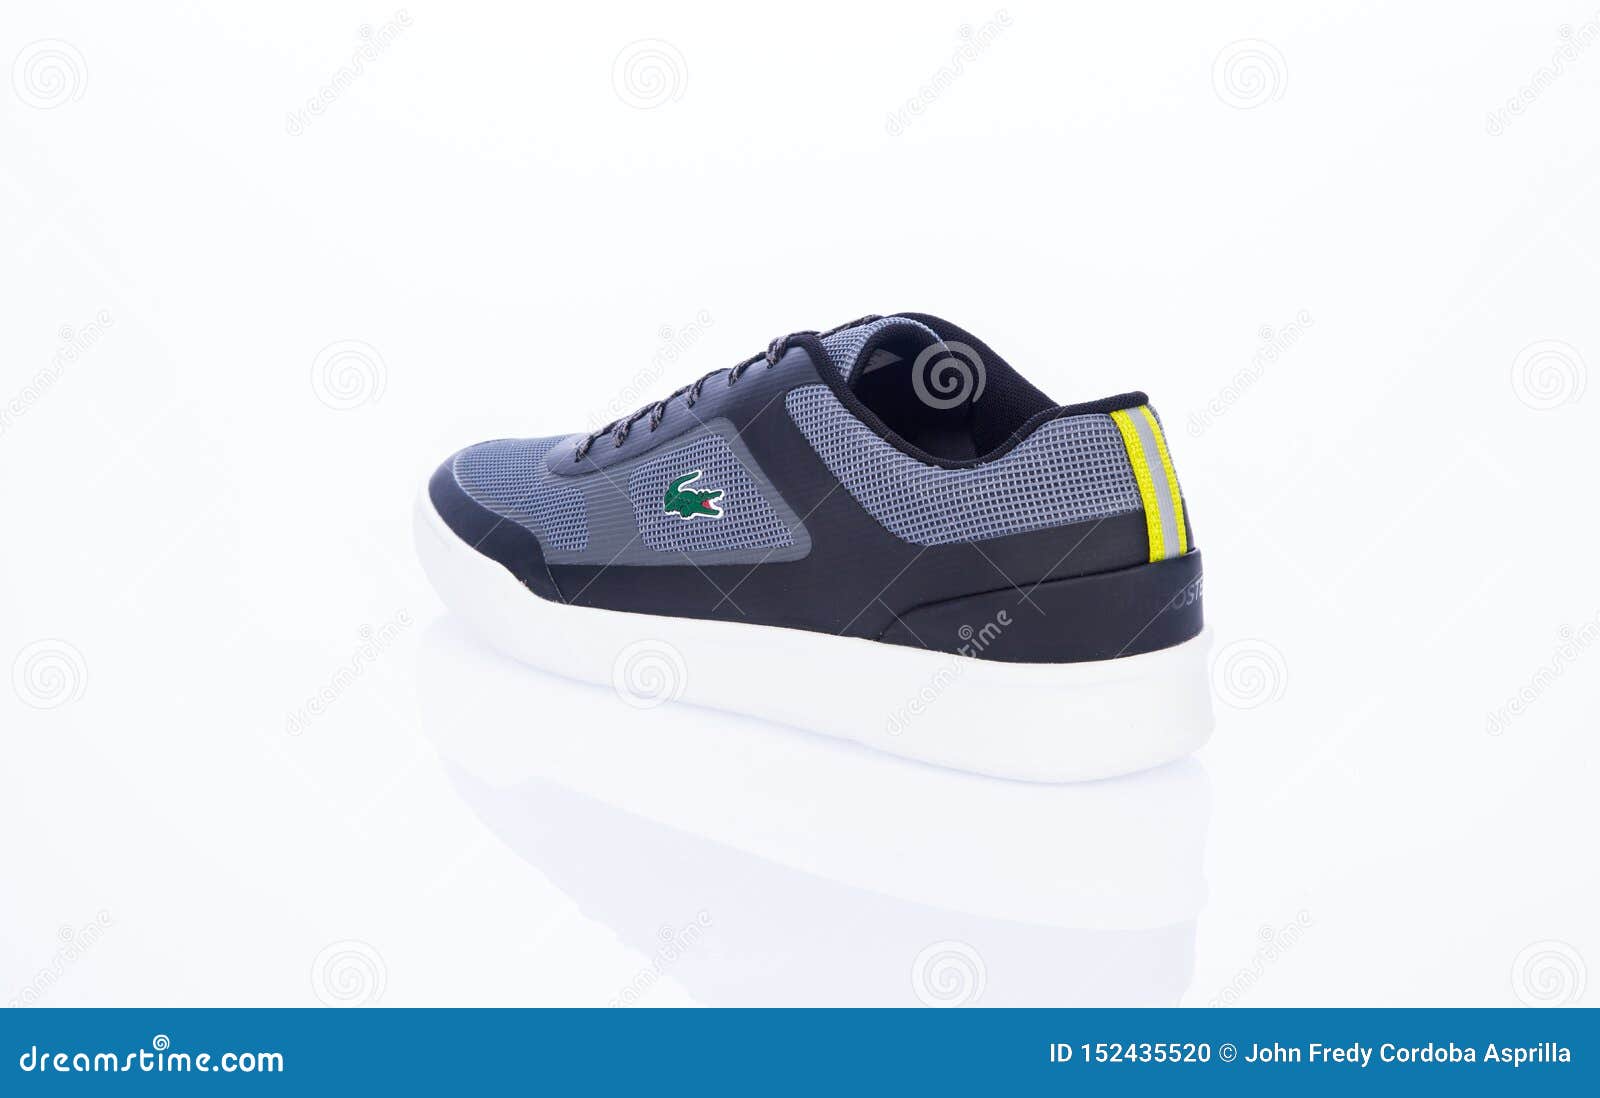 2019 lacoste shoes